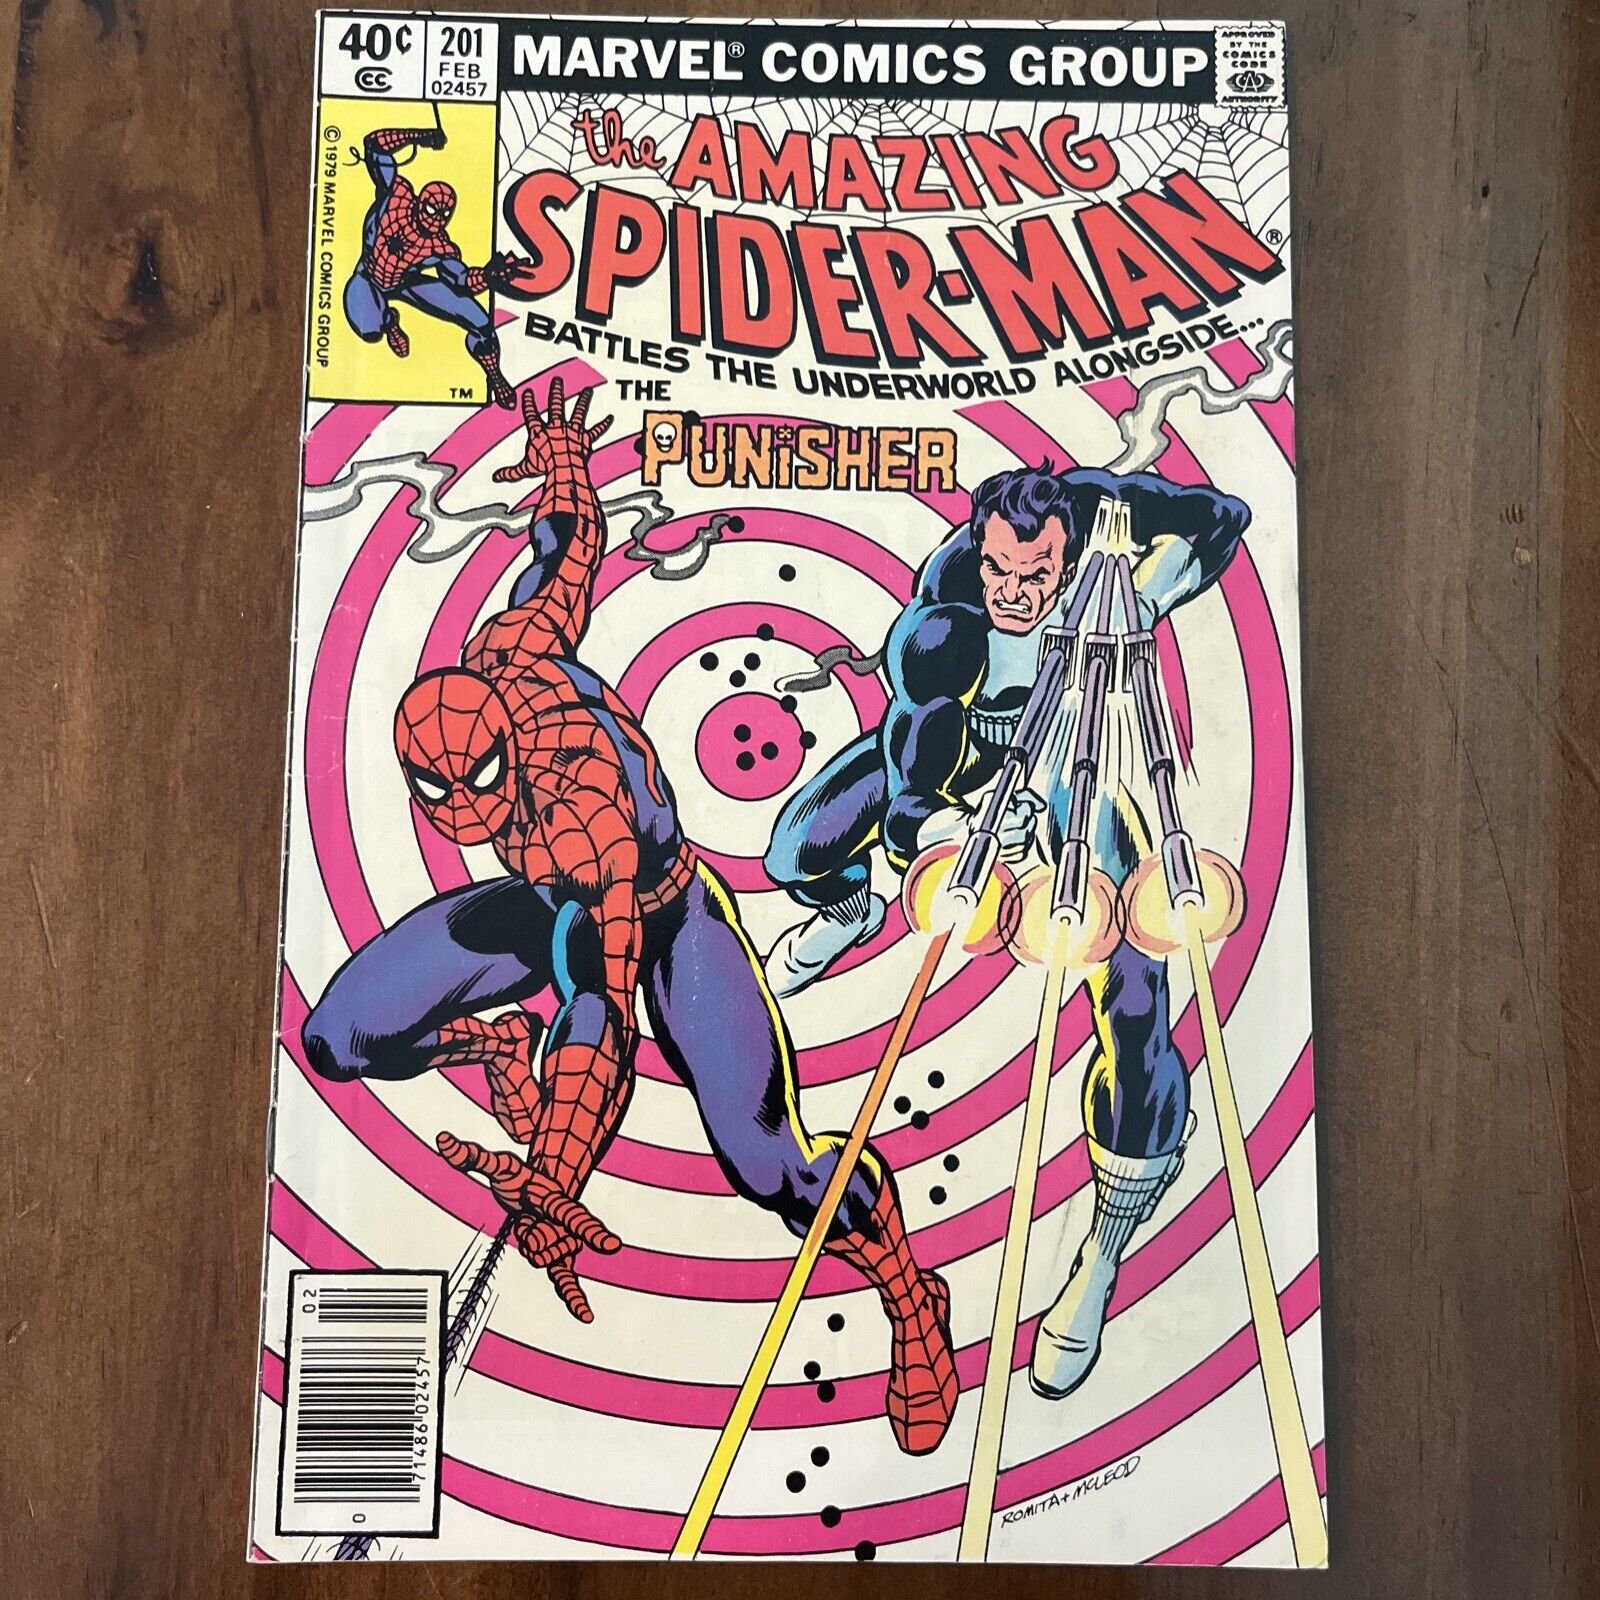 Amazing Spider-Man #201 (Newsstand)